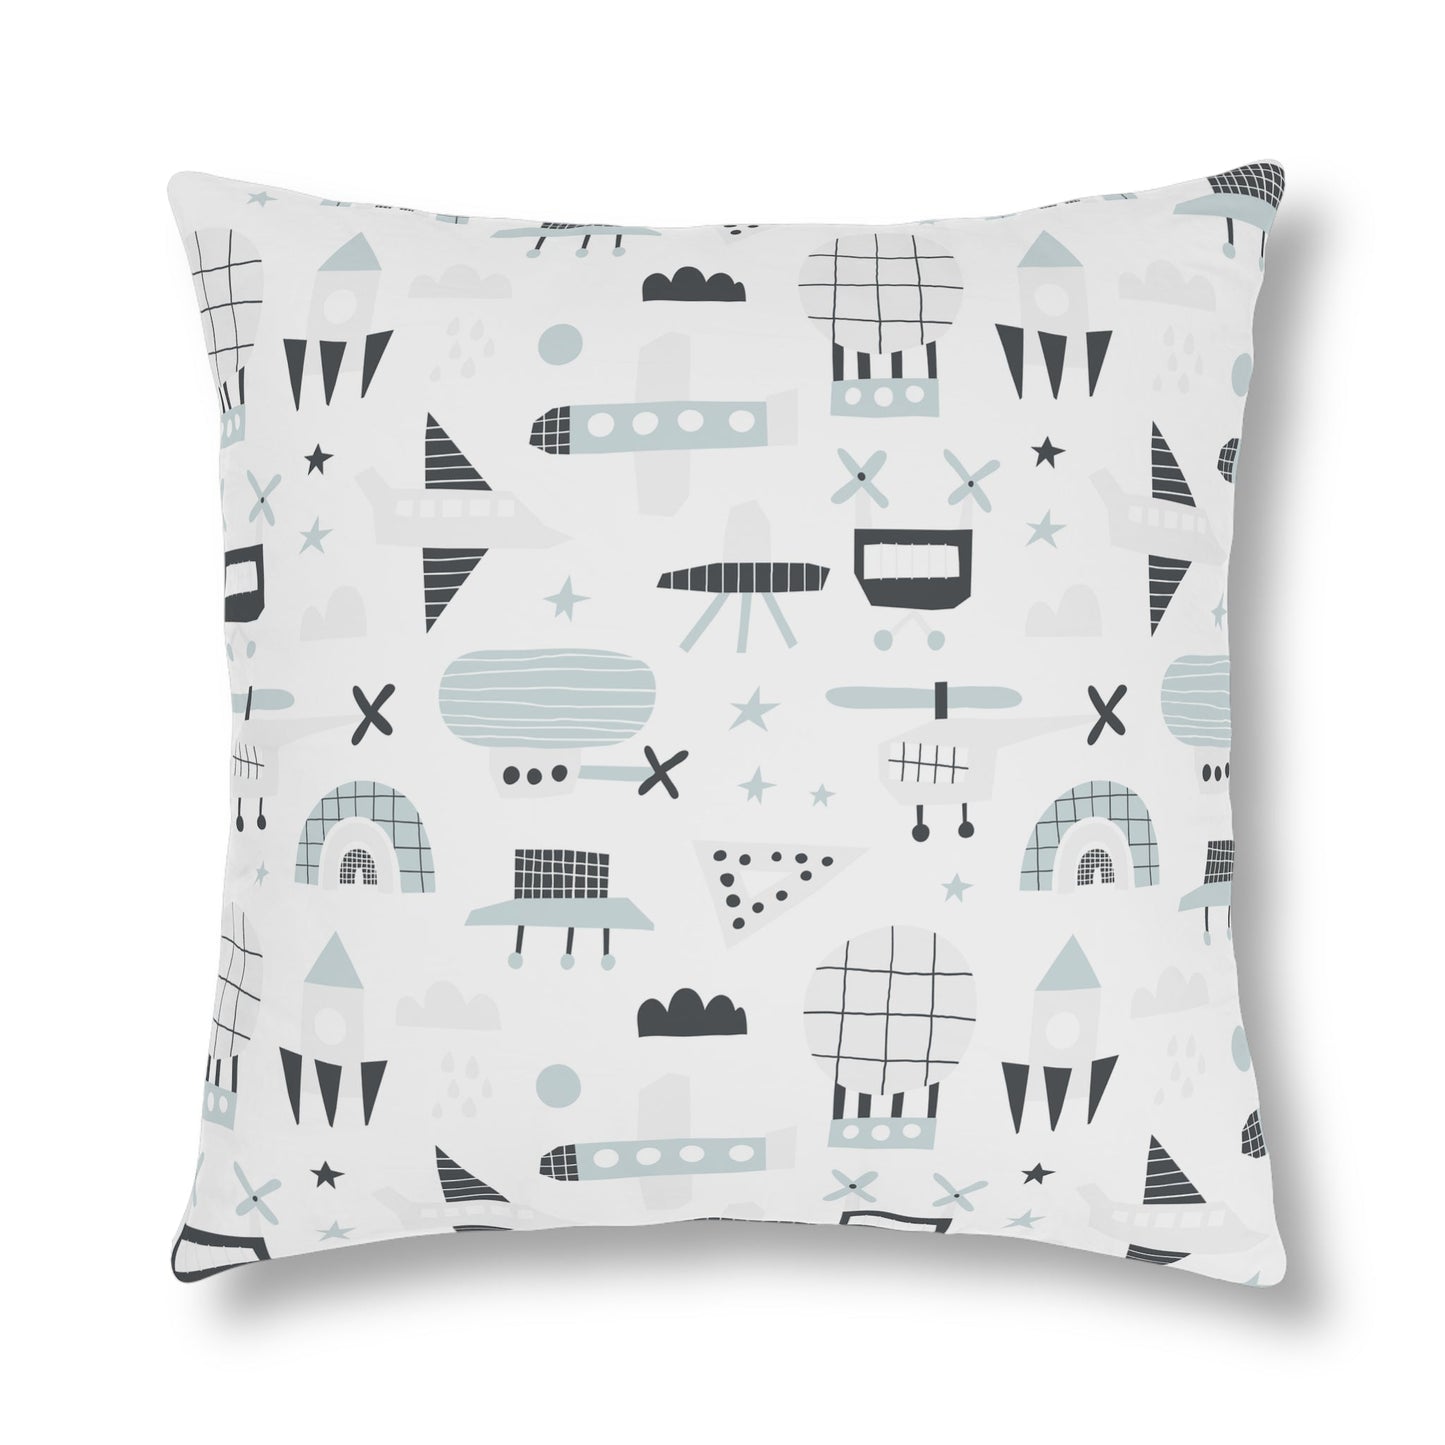 Aviation Design Waterproof Pillows-Shalav5